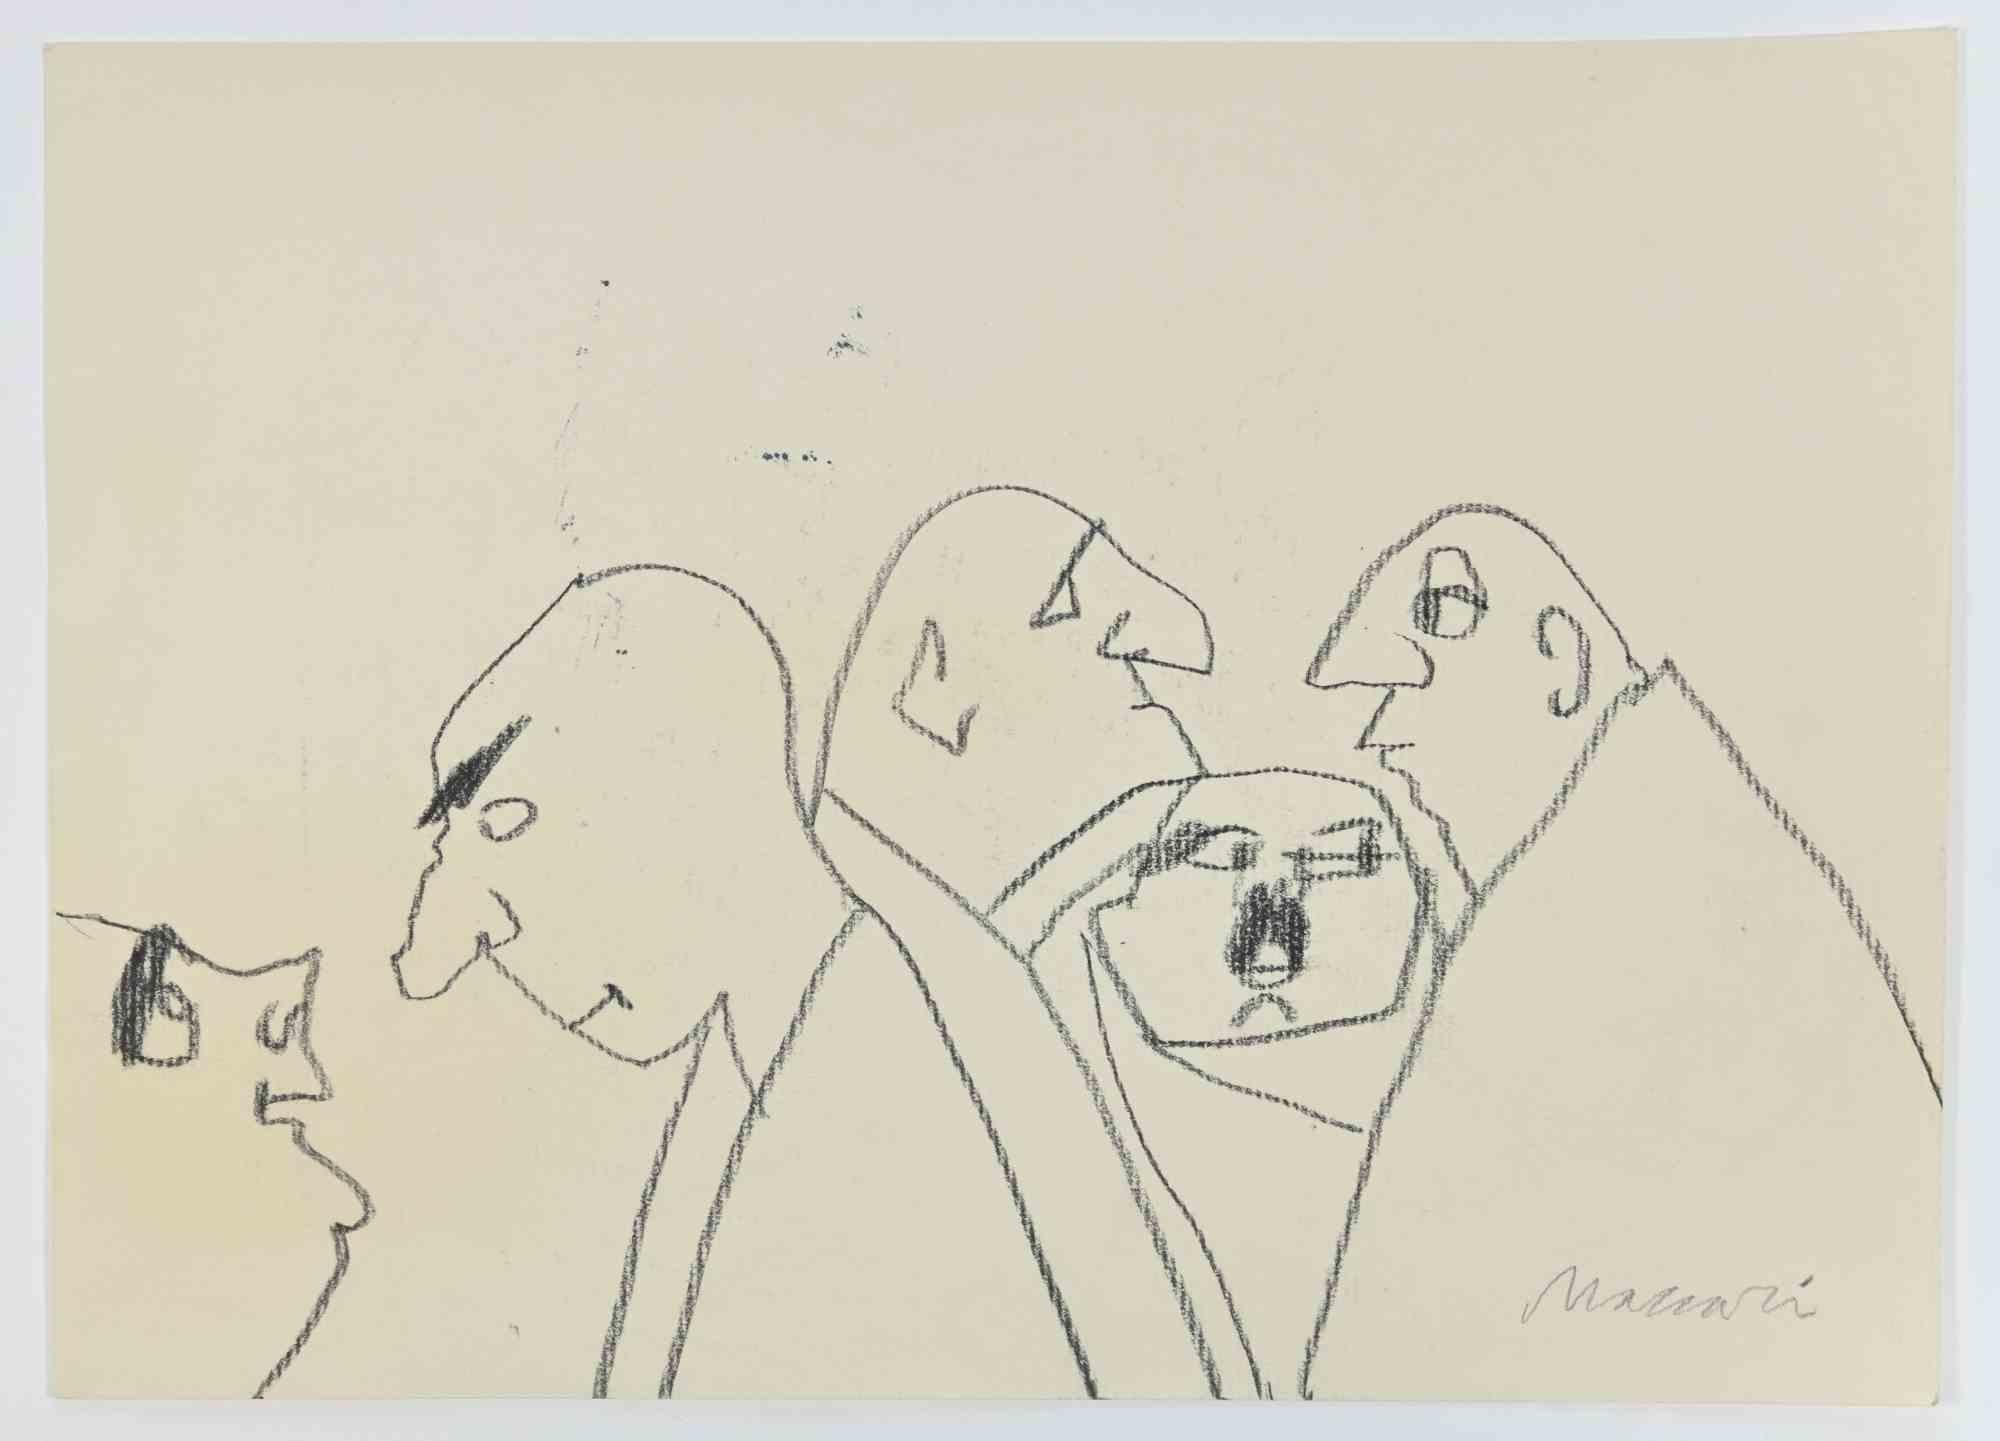 Bald Men ist eine Bleistiftzeichnung von Mino Maccari  (1924-1989) in den 1960er Jahren.

Handsigniert am unteren Rand.

Guter Zustand.

Mino Maccari (Siena, 1924-Rom, 16. Juni 1989) war ein italienischer Schriftsteller, Maler, Graveur und